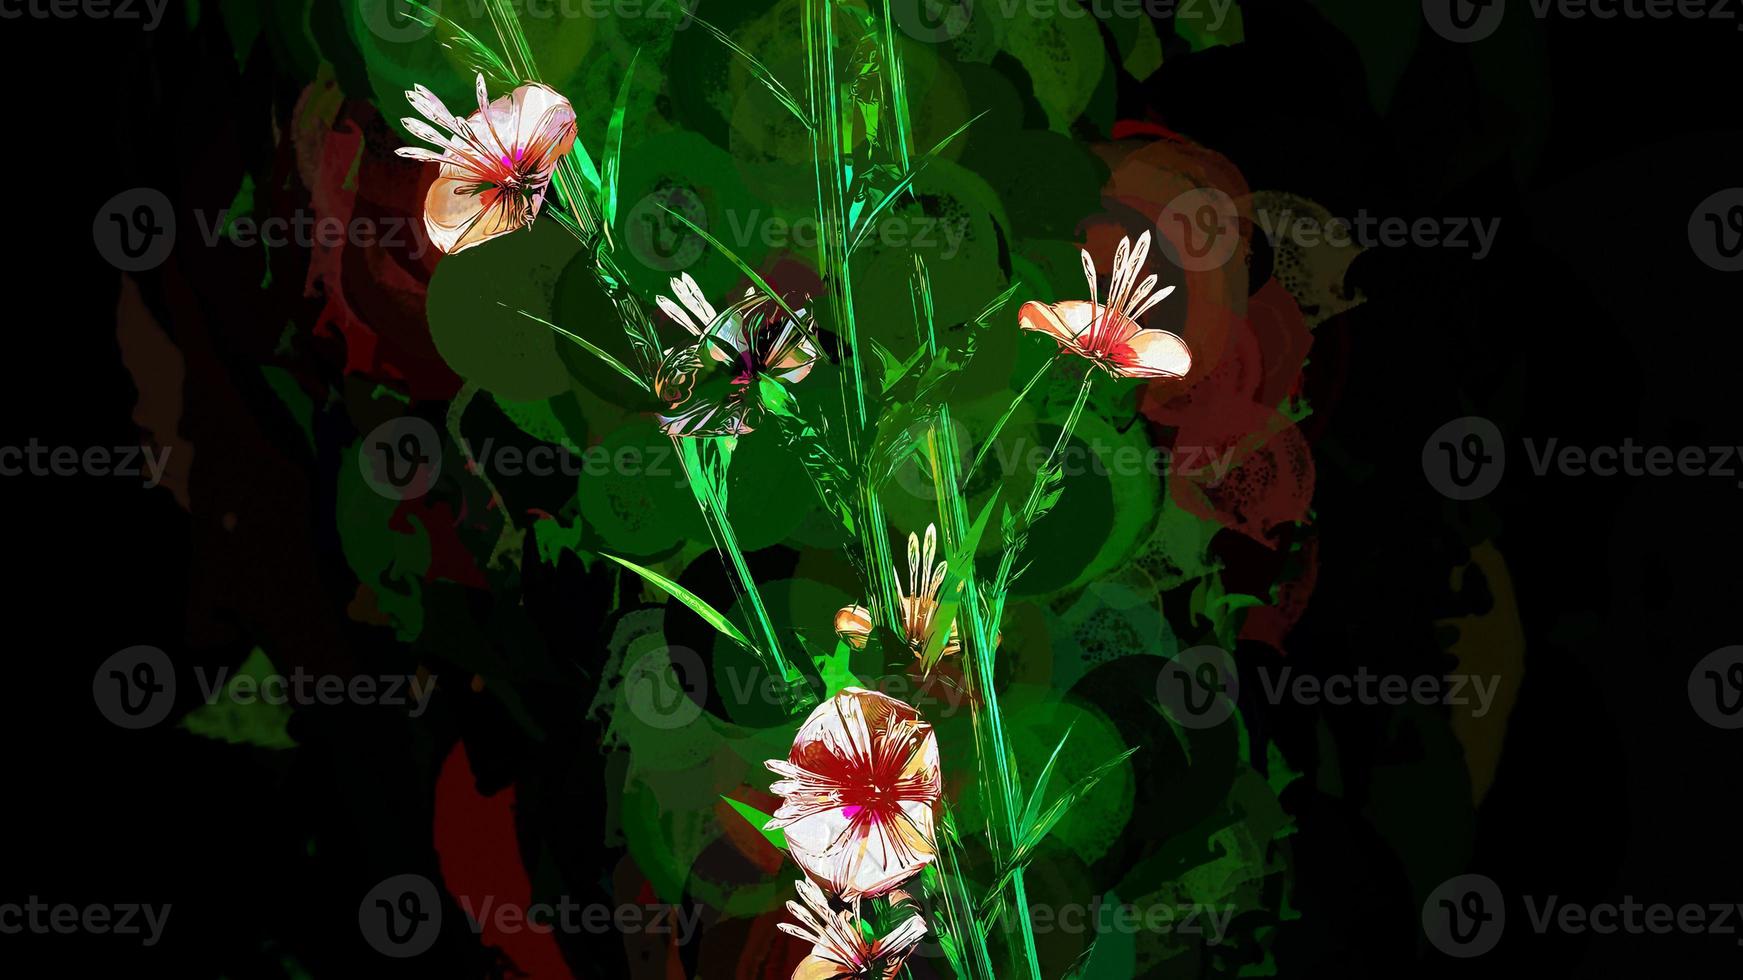 botanische digitale illustration der abstrakten blumen foto